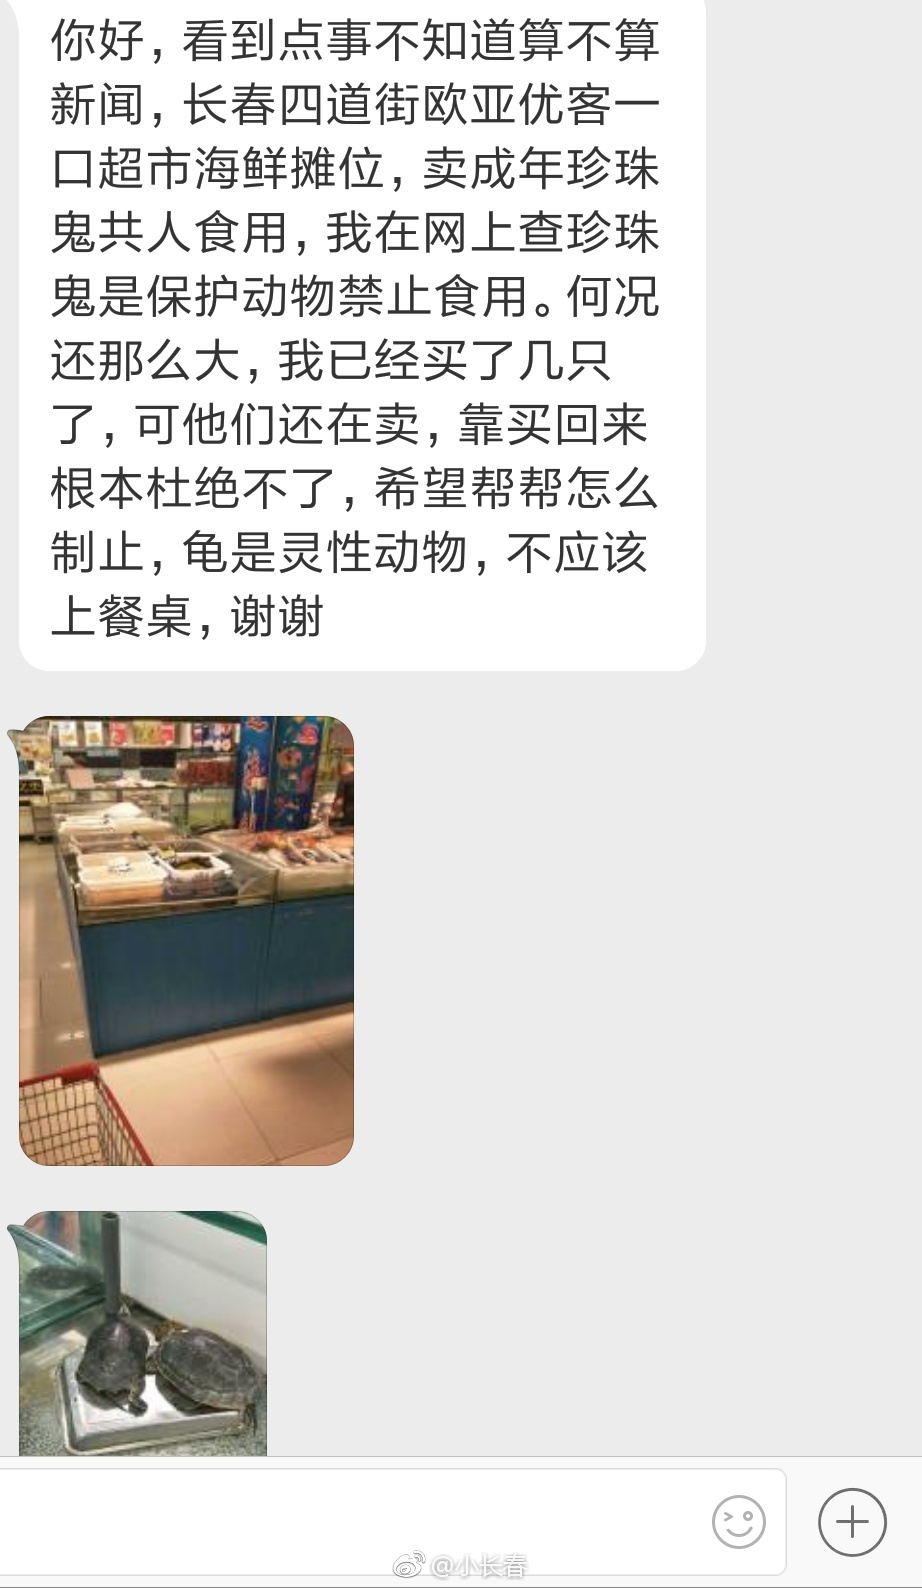 网友爆料:长春四道街欧亚优客一口超市海鲜摊